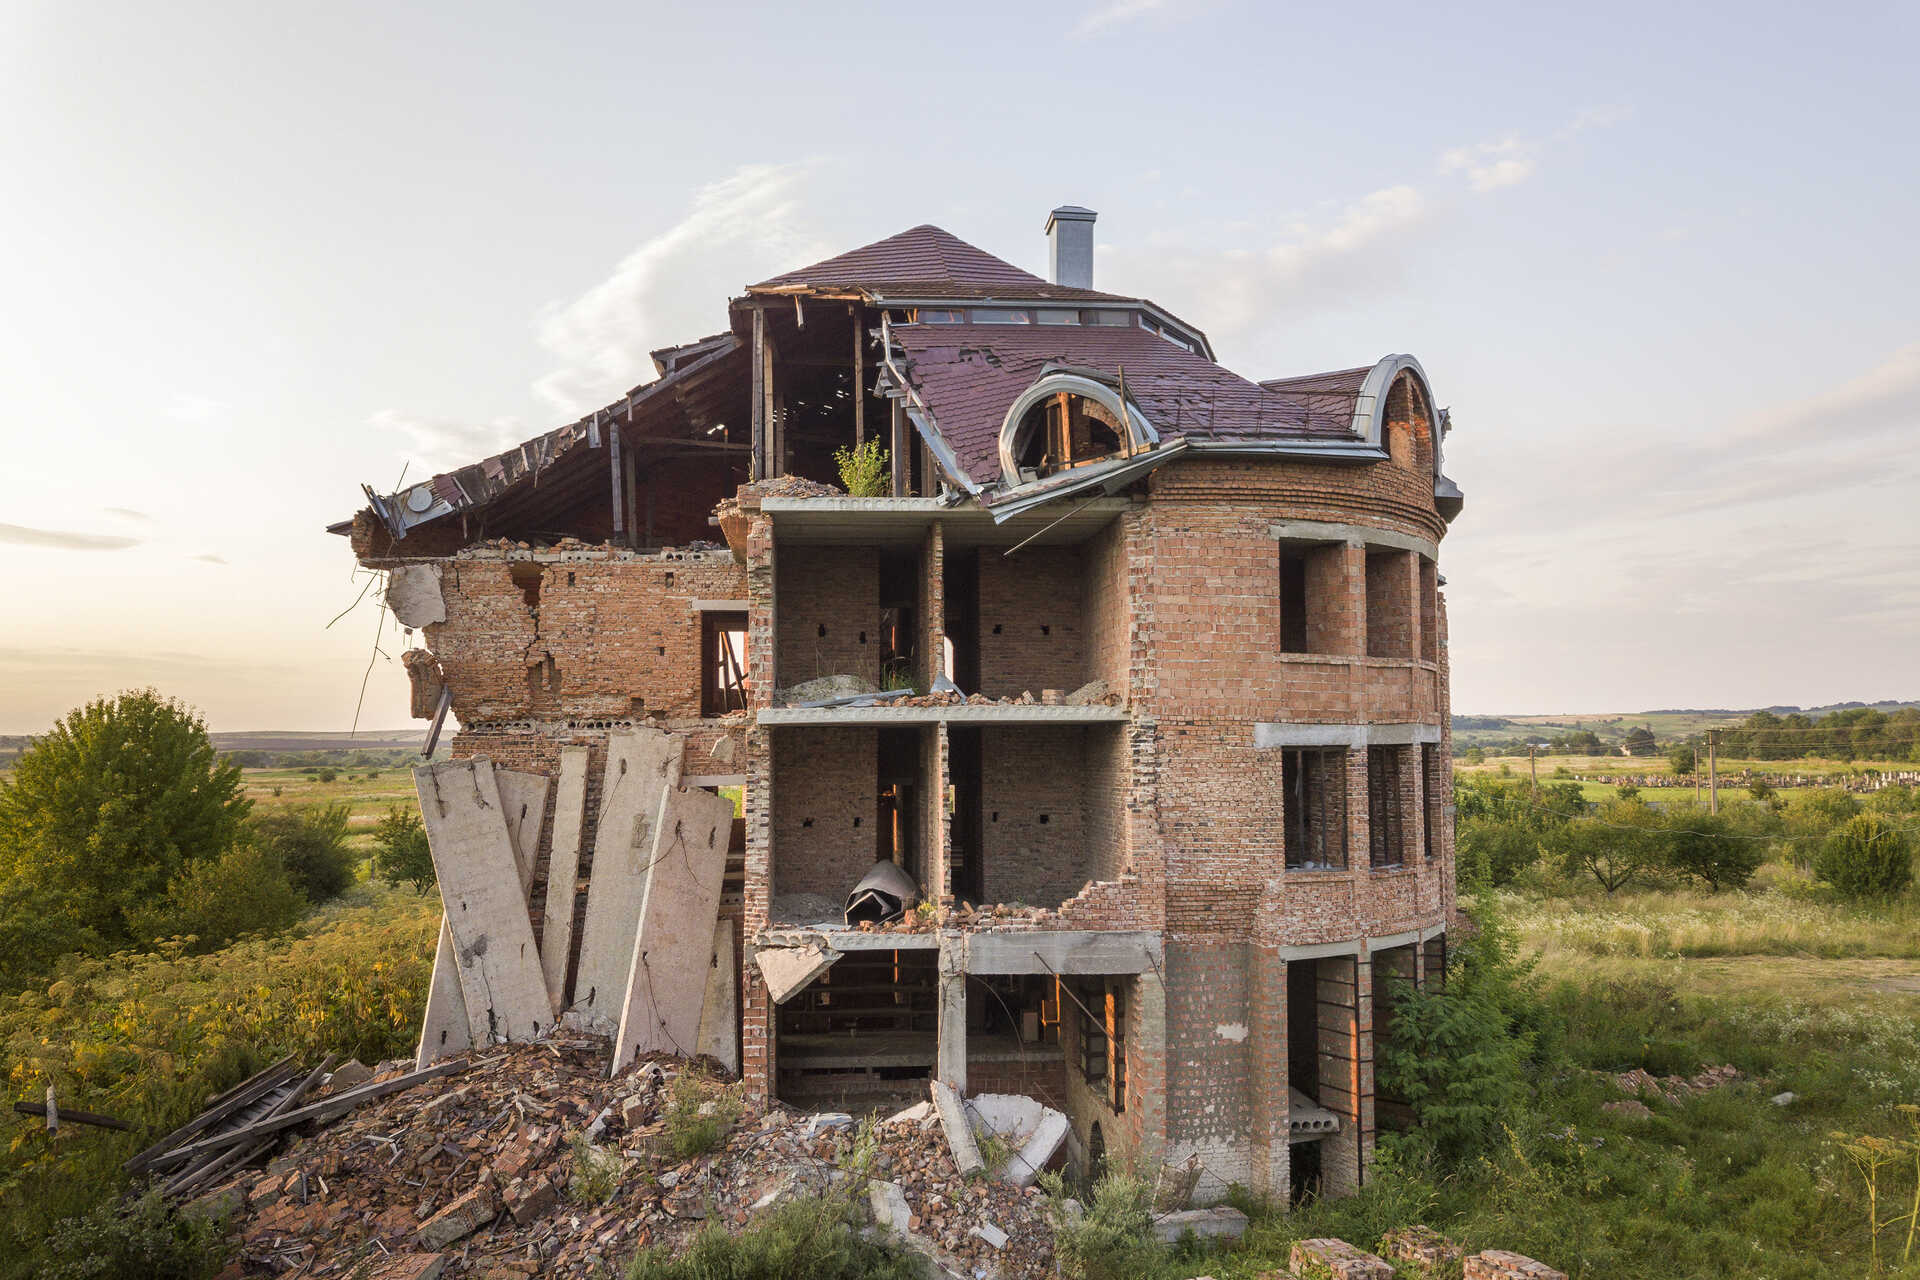 Ejendom: En bygning beskadiget af et jordskælv